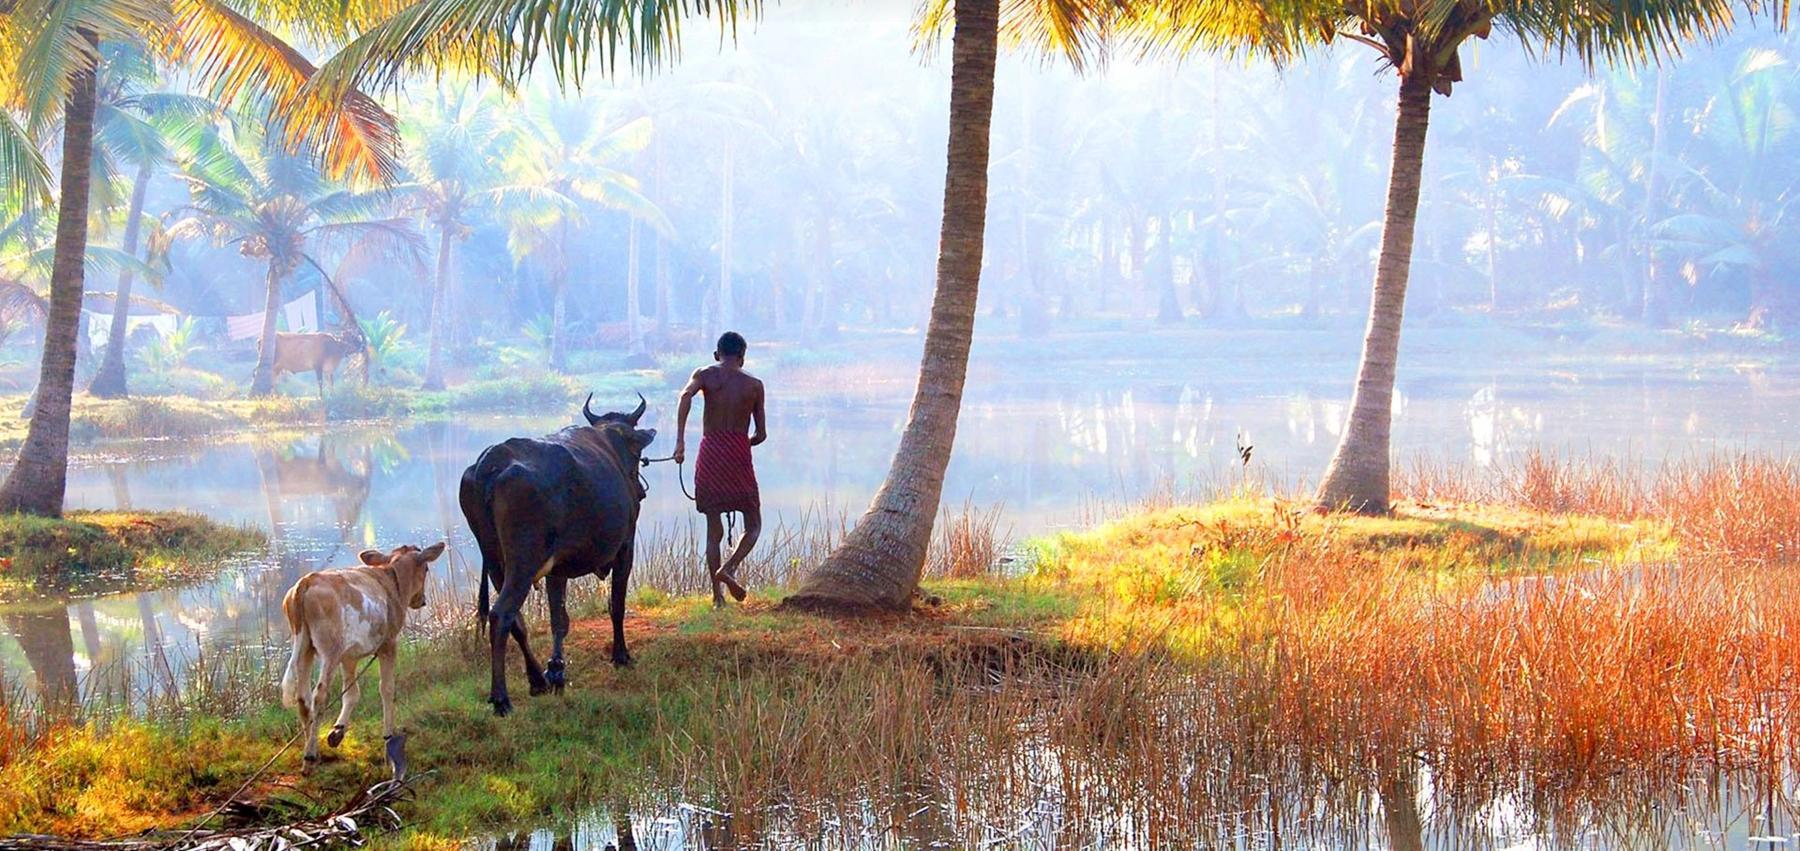 Village walk in Kerala